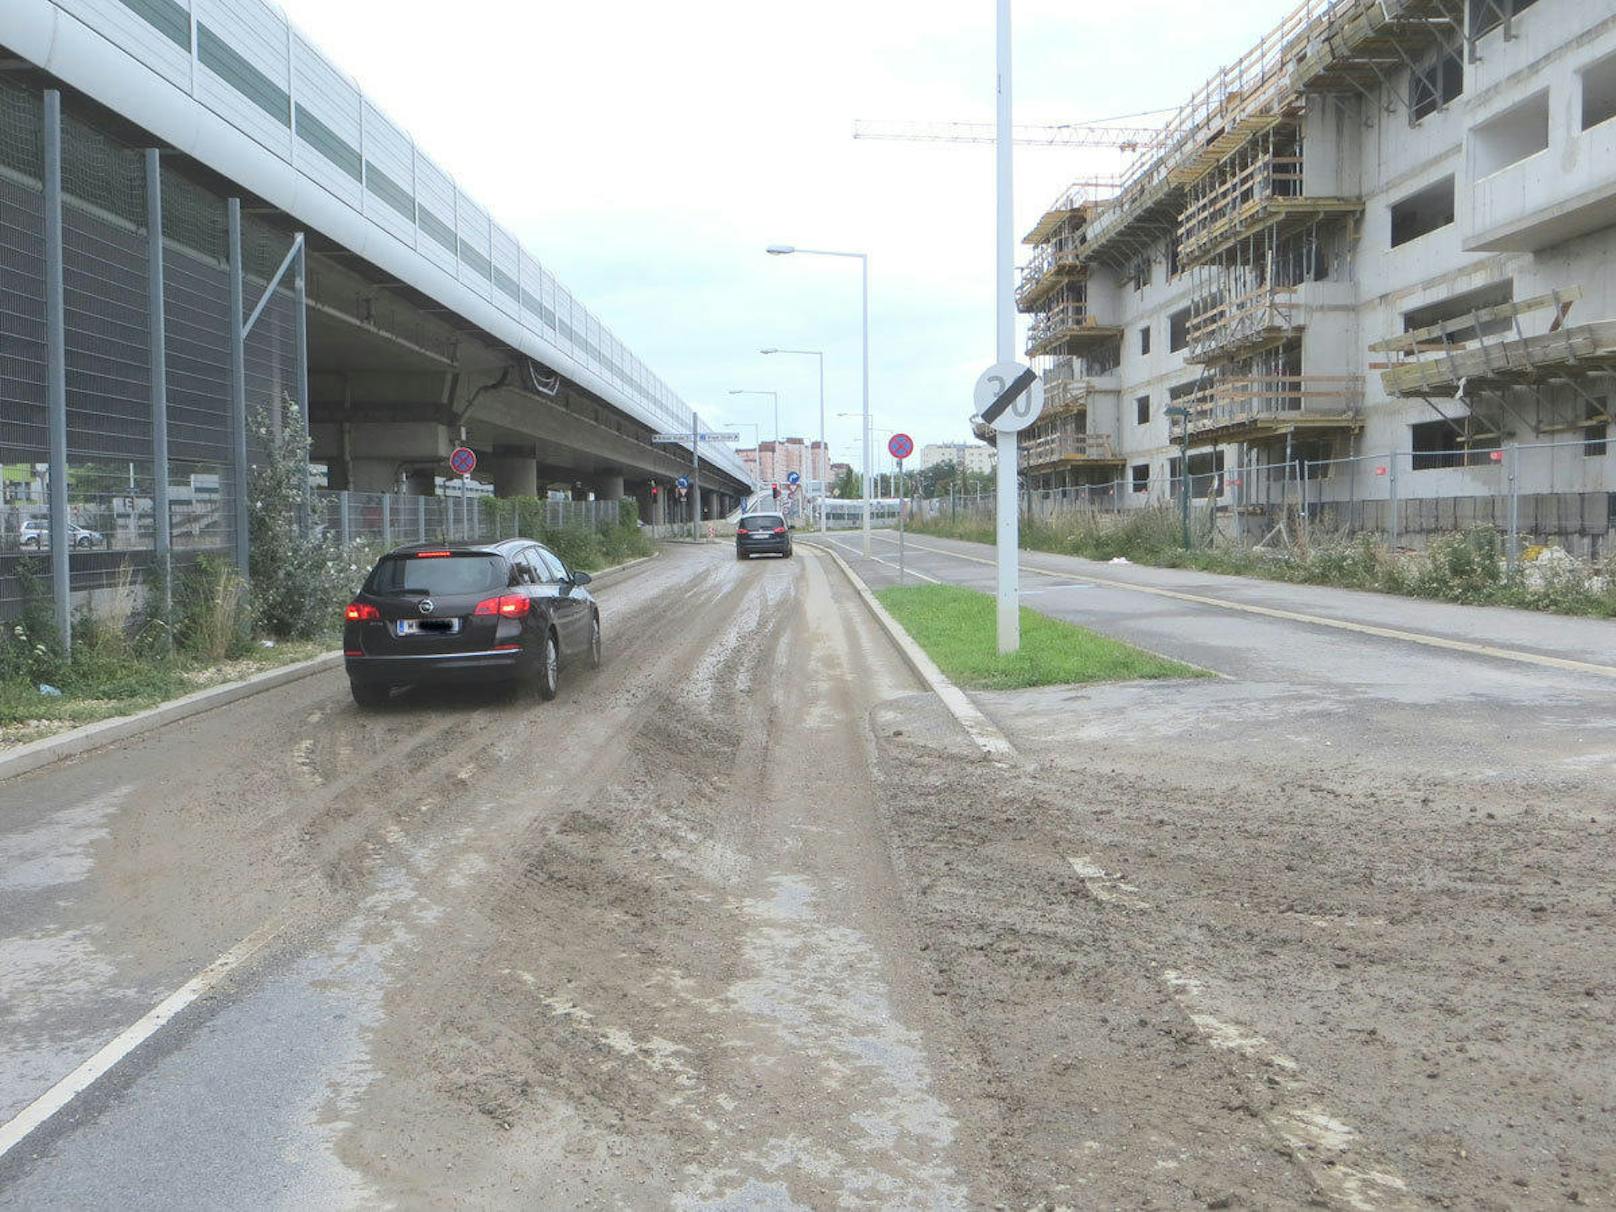 Anrainer der Wohnungs-Großbaustelle "Florasdorf" klagen über Straßen- und Luftverschmutzung durch Lkw. Das WIFF fordert verpflichtende Reifenwaschanlagen bei Baustellen.